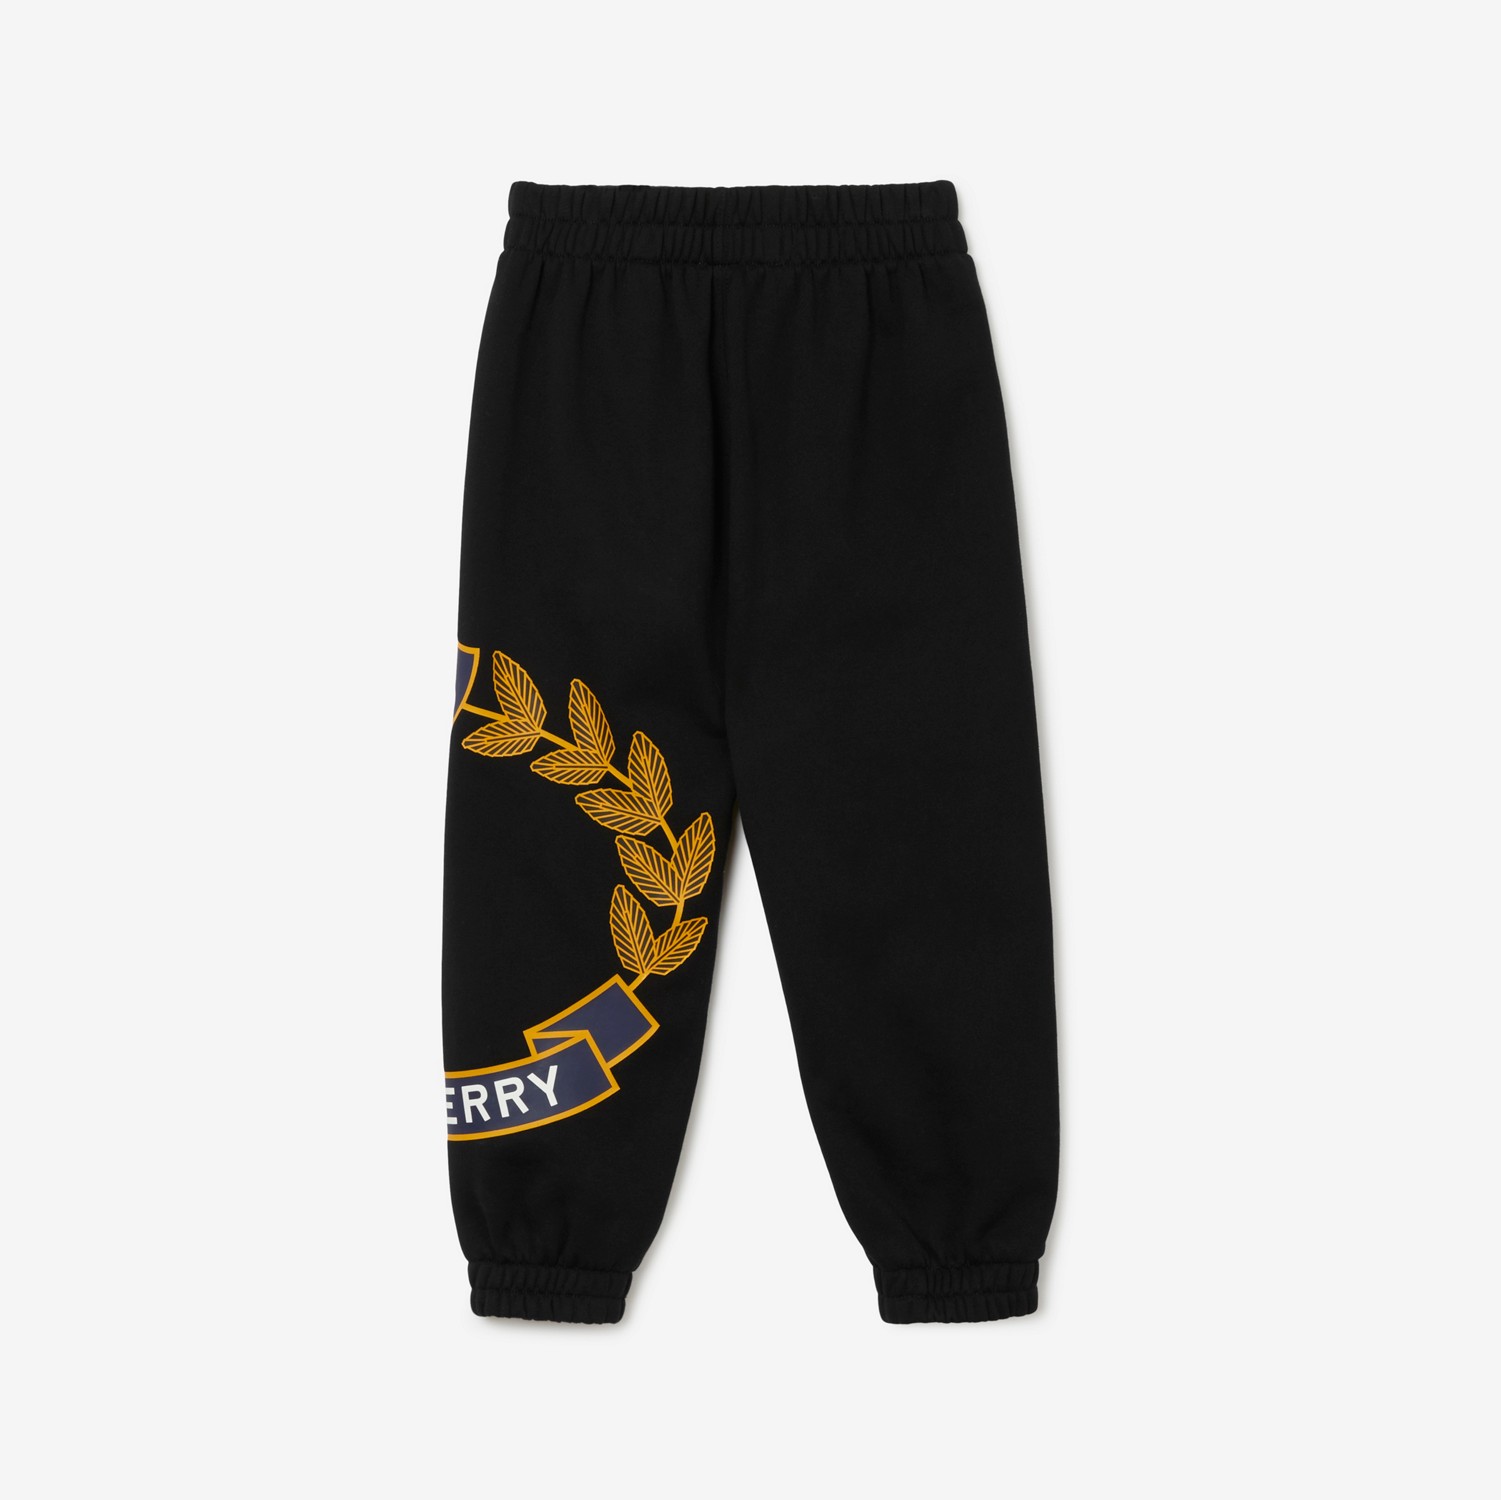 Pantaloni da jogging in cotone con stemma con foglie di quercia (Nero) | Sito ufficiale Burberry®